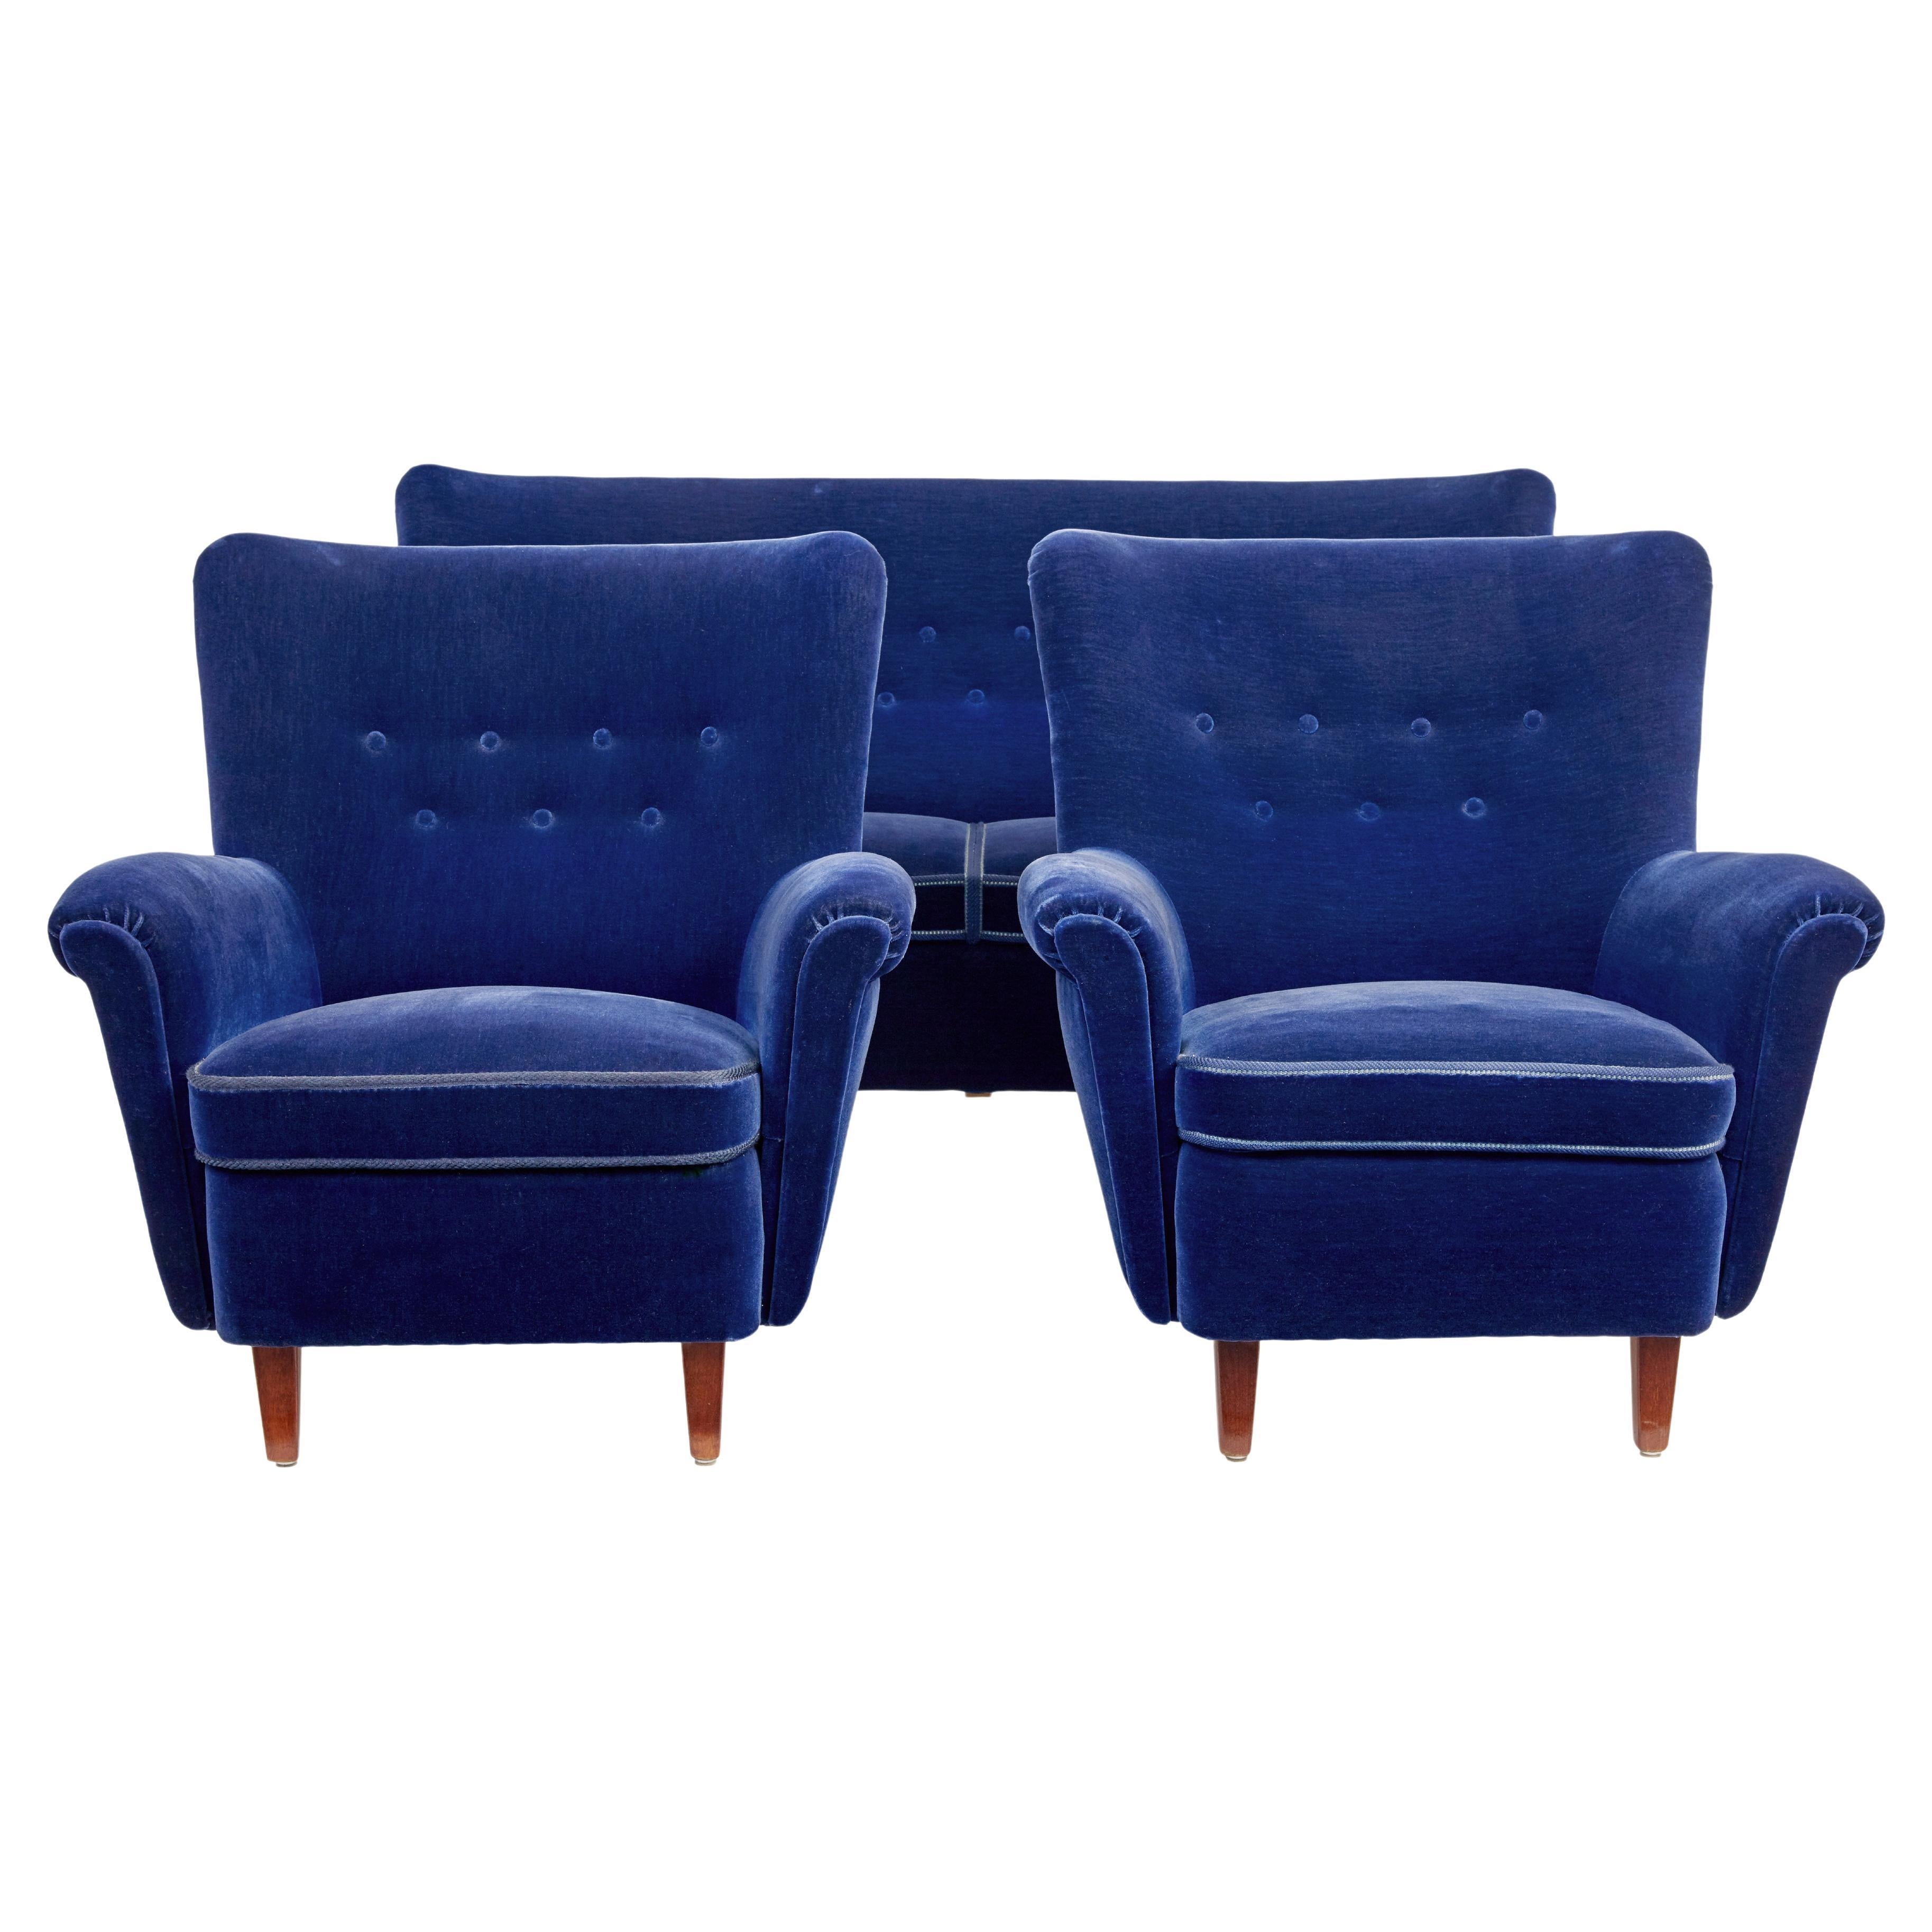 Fine mid 20th century blue 3 piece suite For Sale